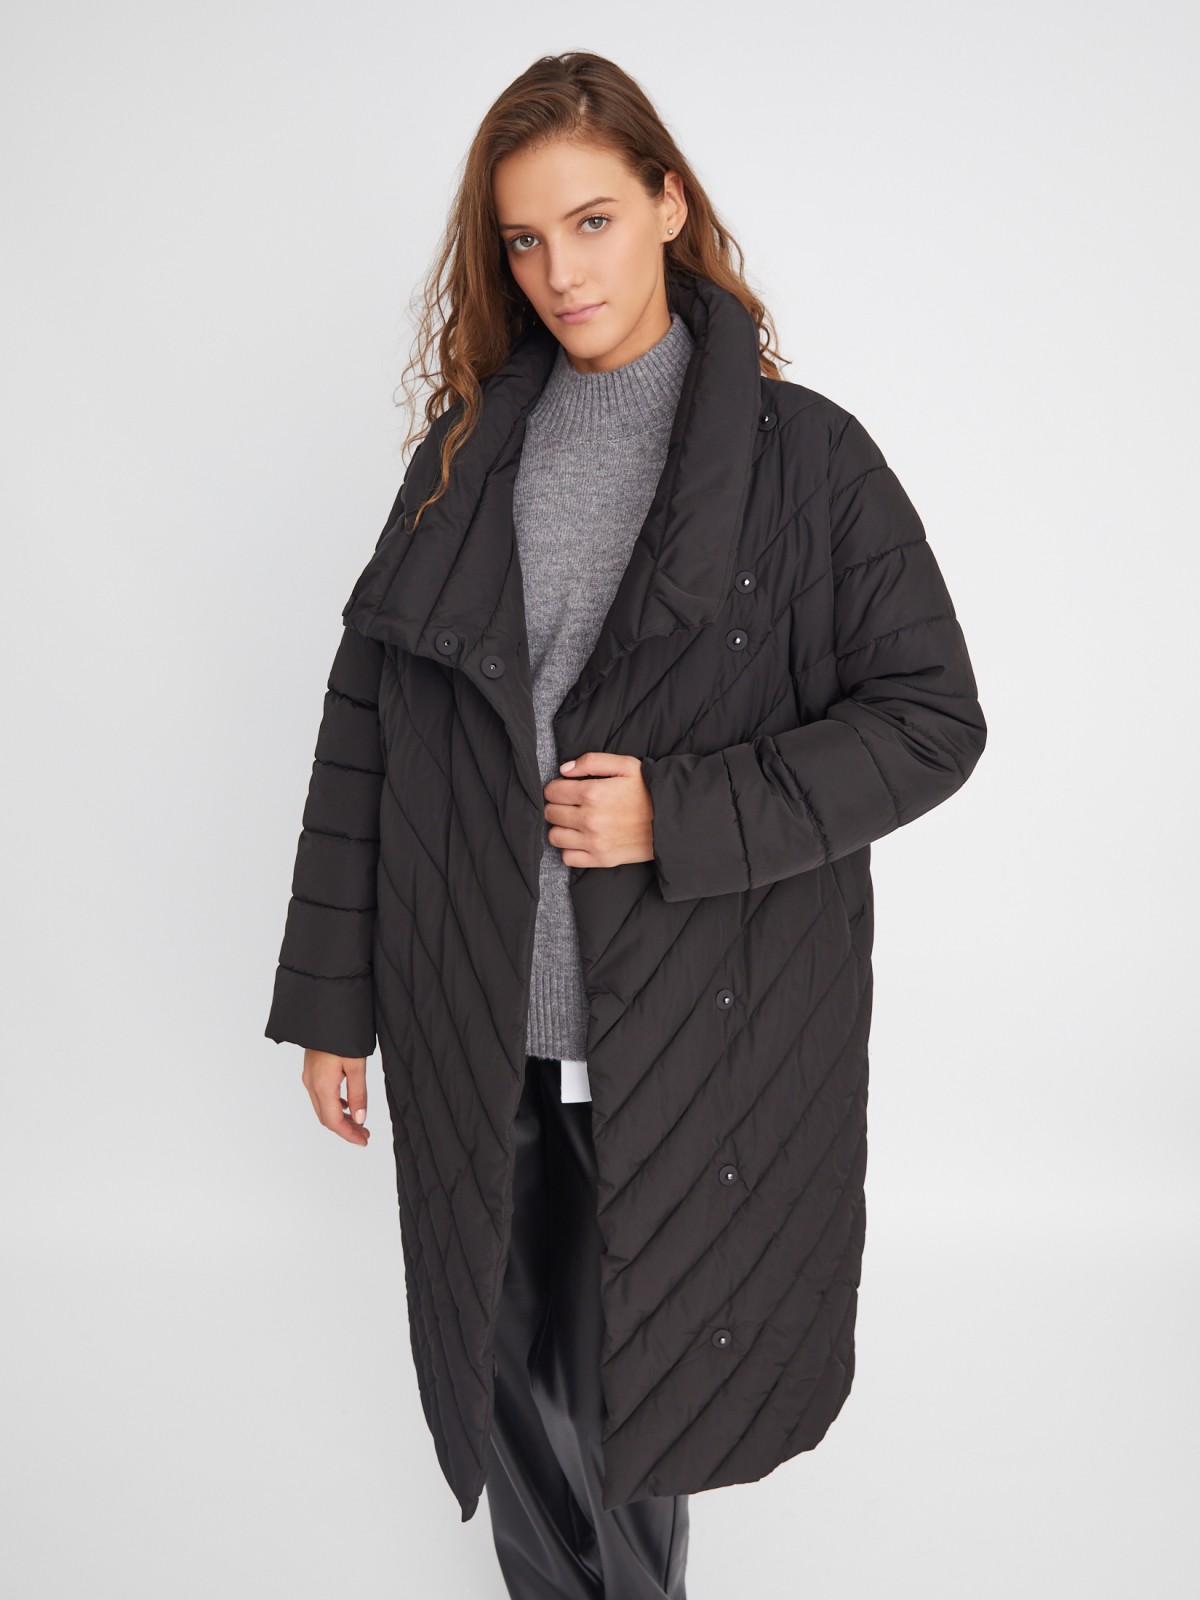 Тёплая стёганая куртка-пальто с высоким воротником zolla 023345261034, цвет черный, размер XL